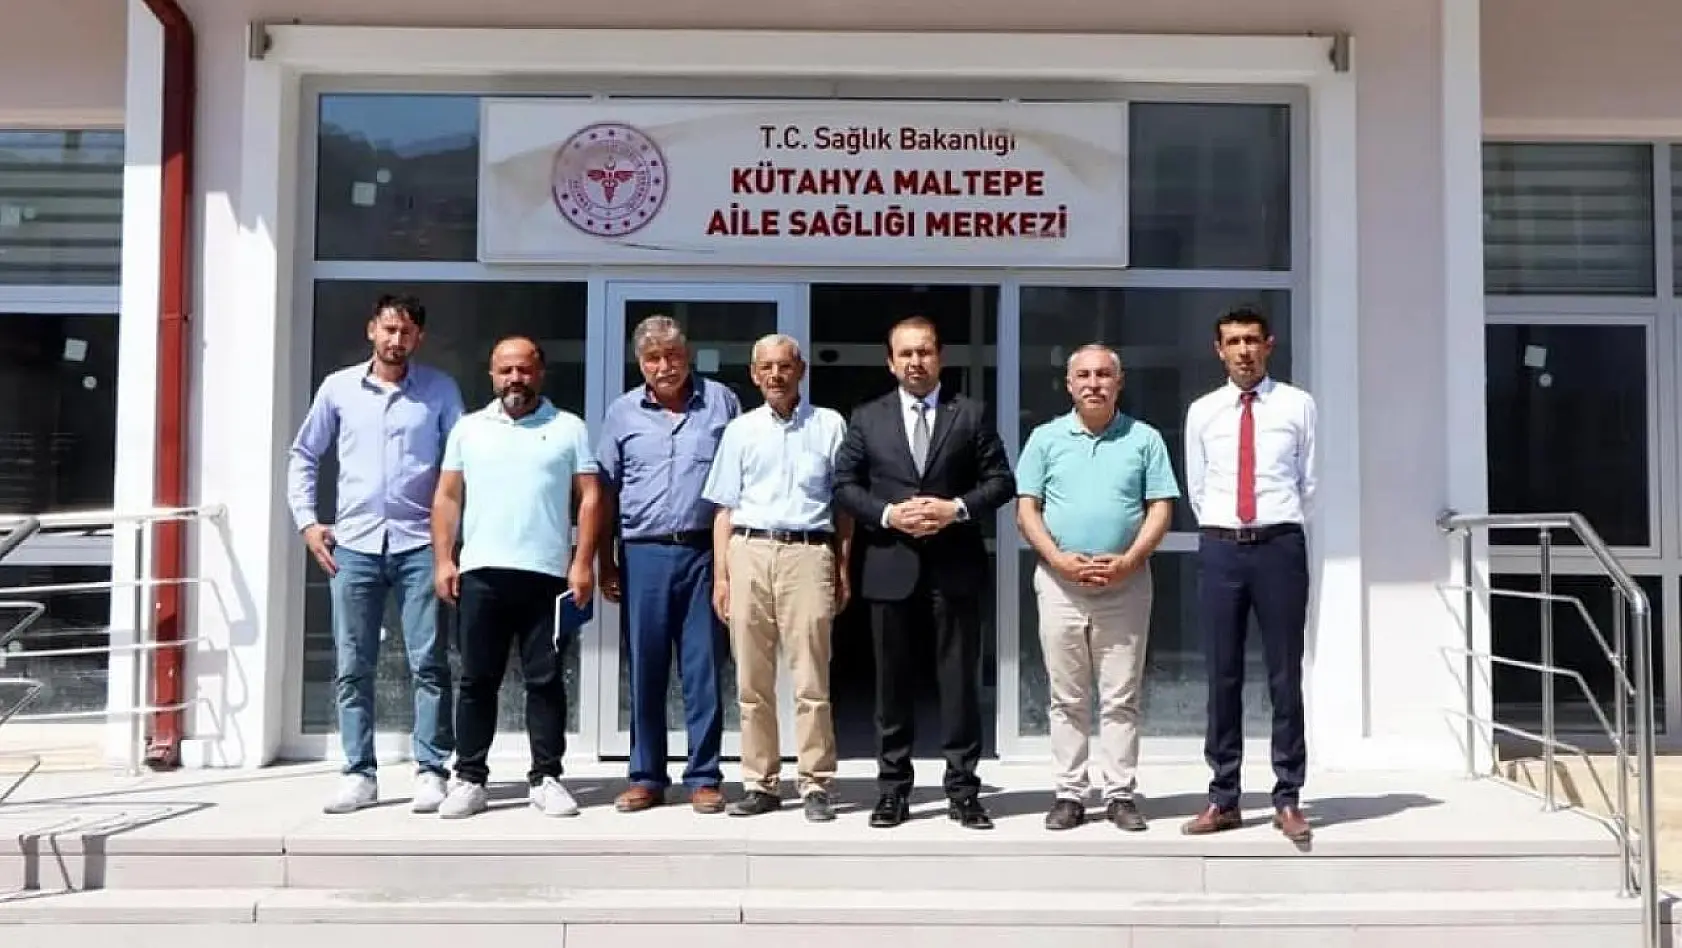 Kütahya Maltepe Aile Sağlığı Merkezi açılışa hazırlanıyor